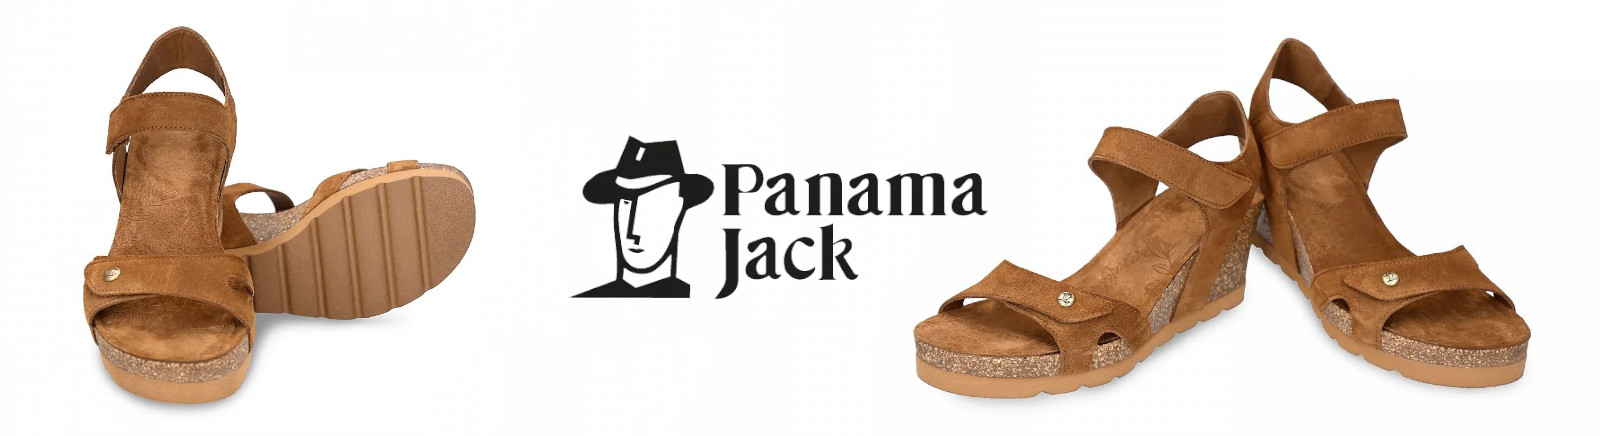 Prange: Panama Jack Schnürboots für Damen online shoppen